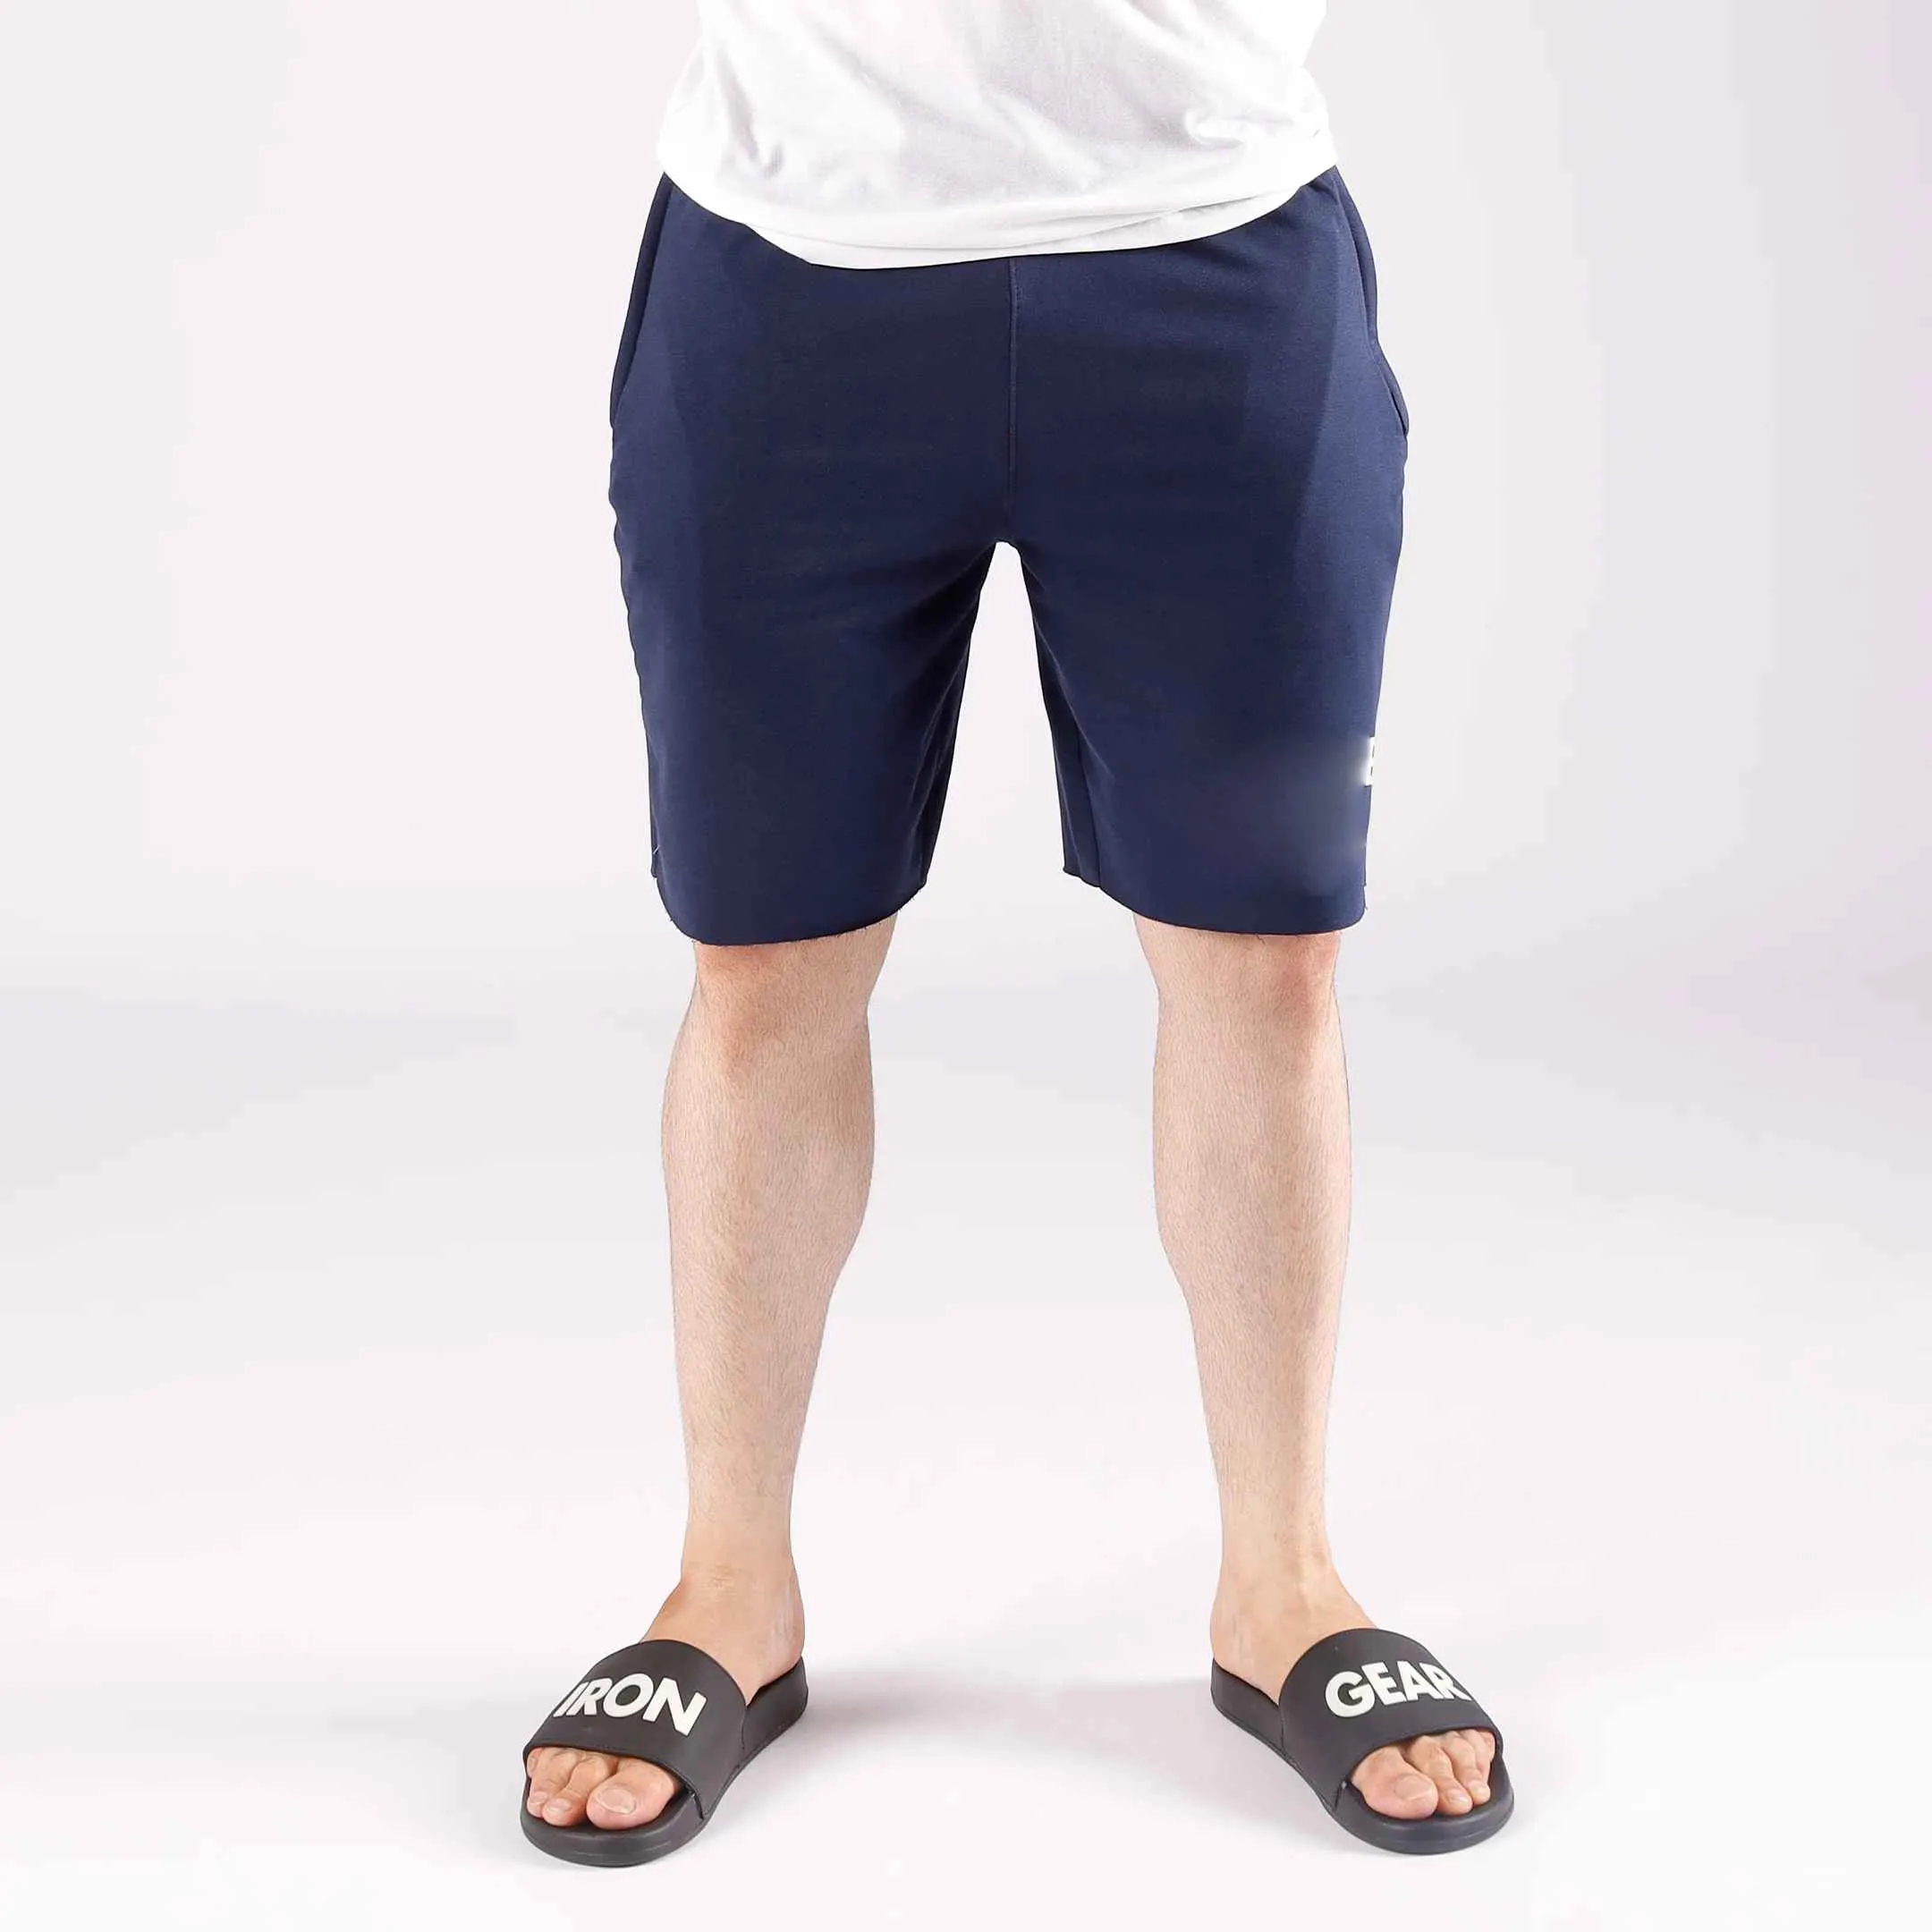 Pantalones cortos Epic de baloncesto personalizados para hombre, precio al por mayor, nueva adición de equipo de elevación, tela de algodón súper cómoda